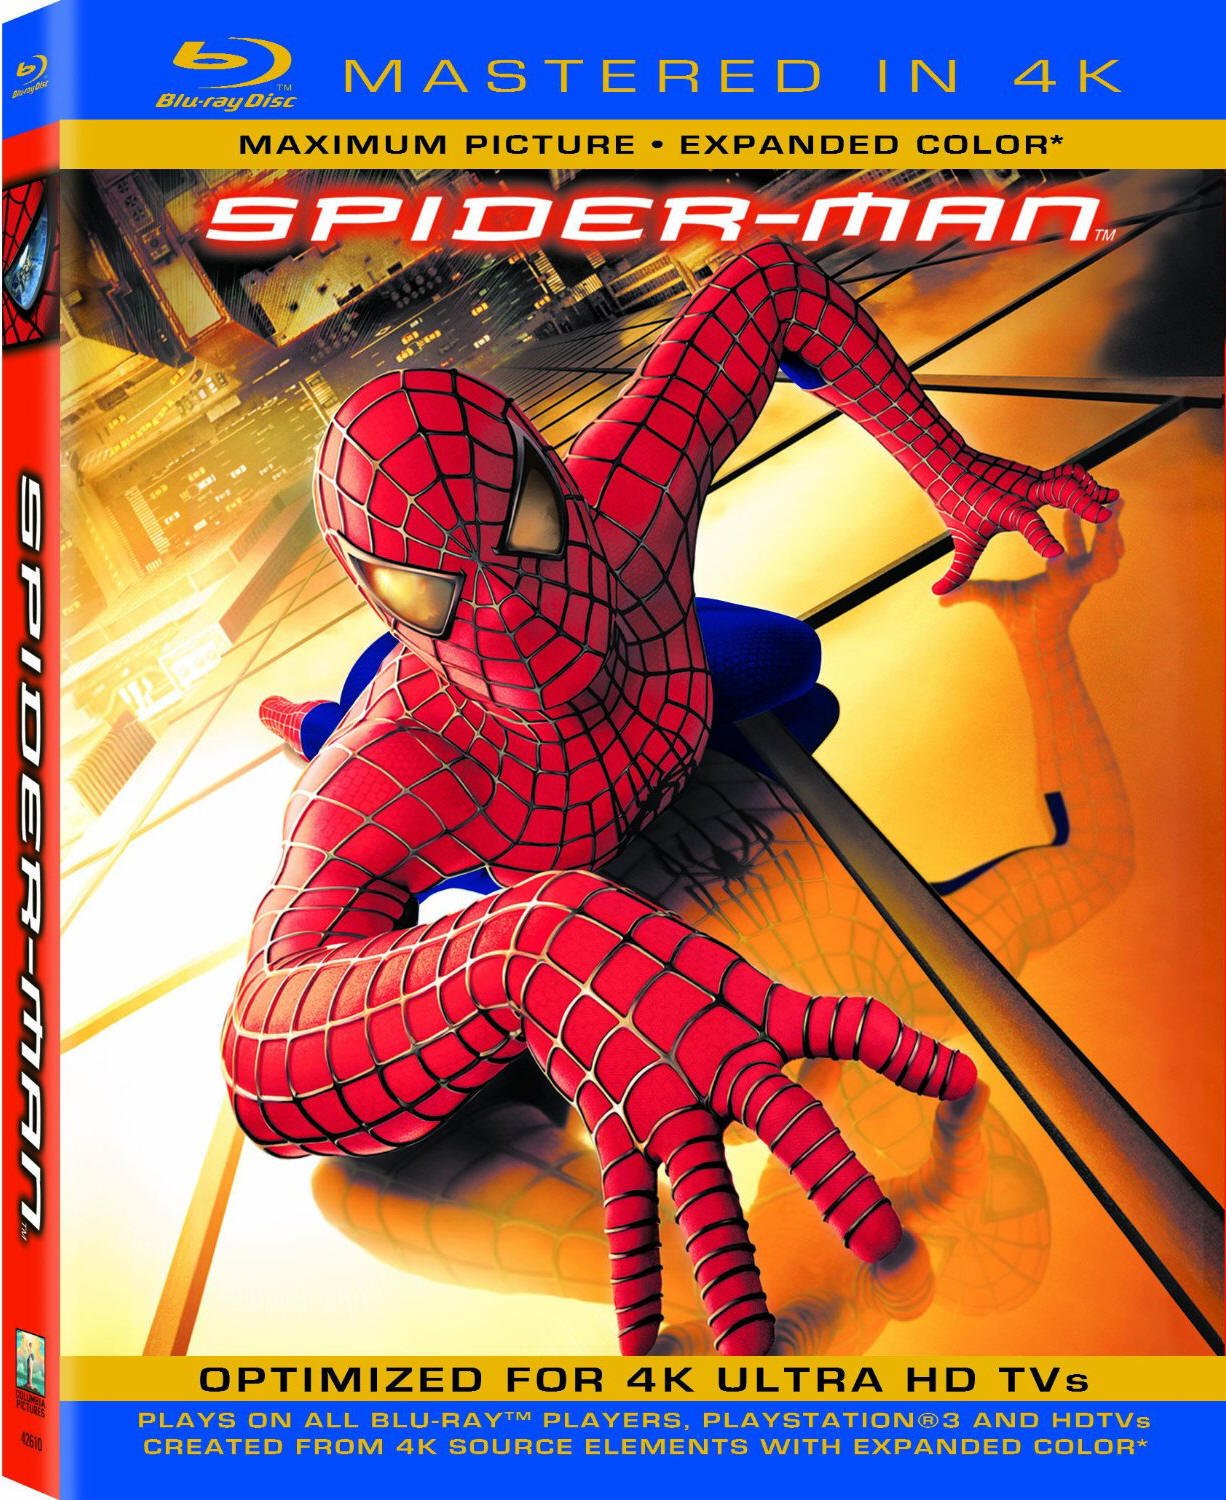 [ 蜘蛛侠1 ]  [4K修复版 DIY上译国语DTS.粤语 2.0+双语简体特效.国语对应简体特效+菜单修改] Spider Man 2002 4K Remastered 1080p DTS-HD MA 5.1 DIY-Chinagear@HDSky [36.37 GB ]-1.jpg